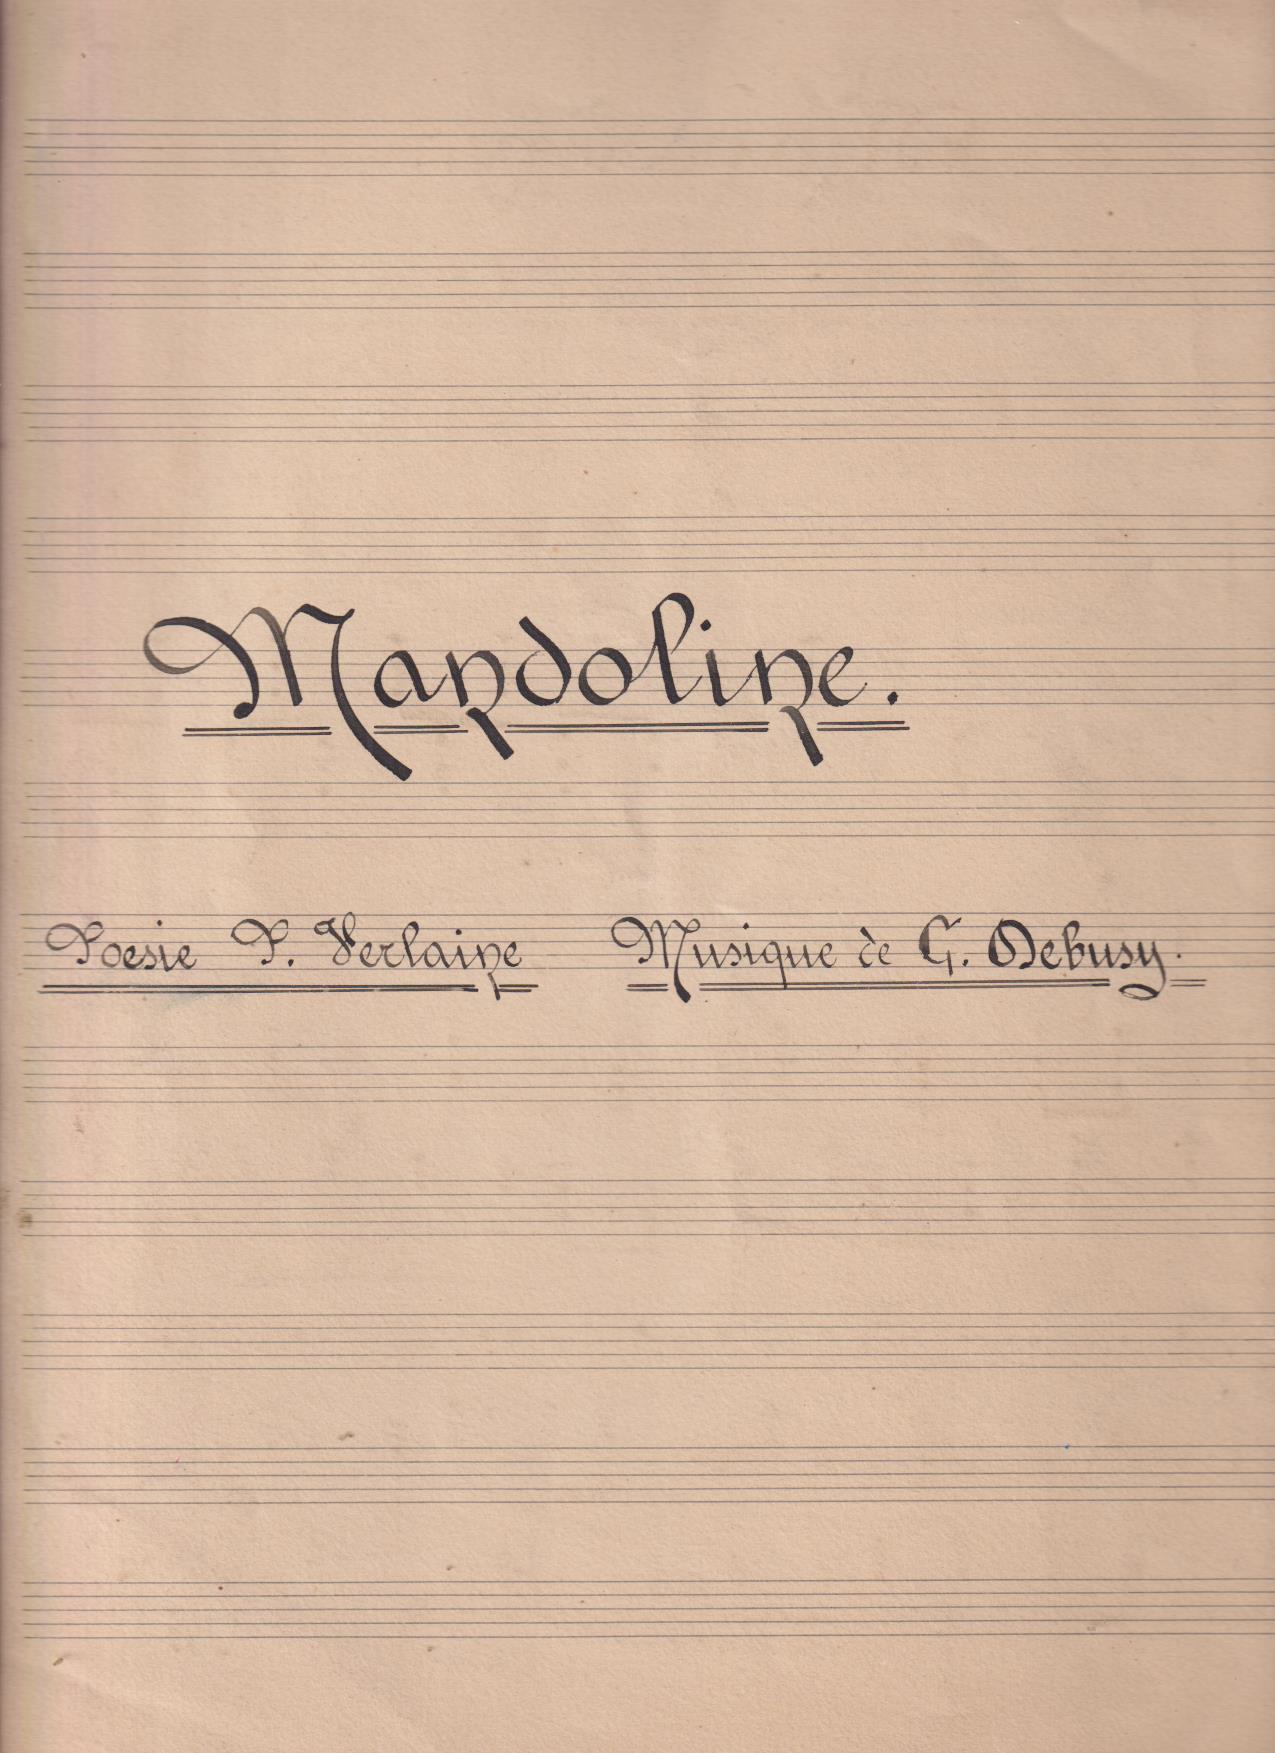 Mandoline. Poesie Paul Verlaine, Musique de G. Debussy. Manuscrita (31x27) 5 páginas